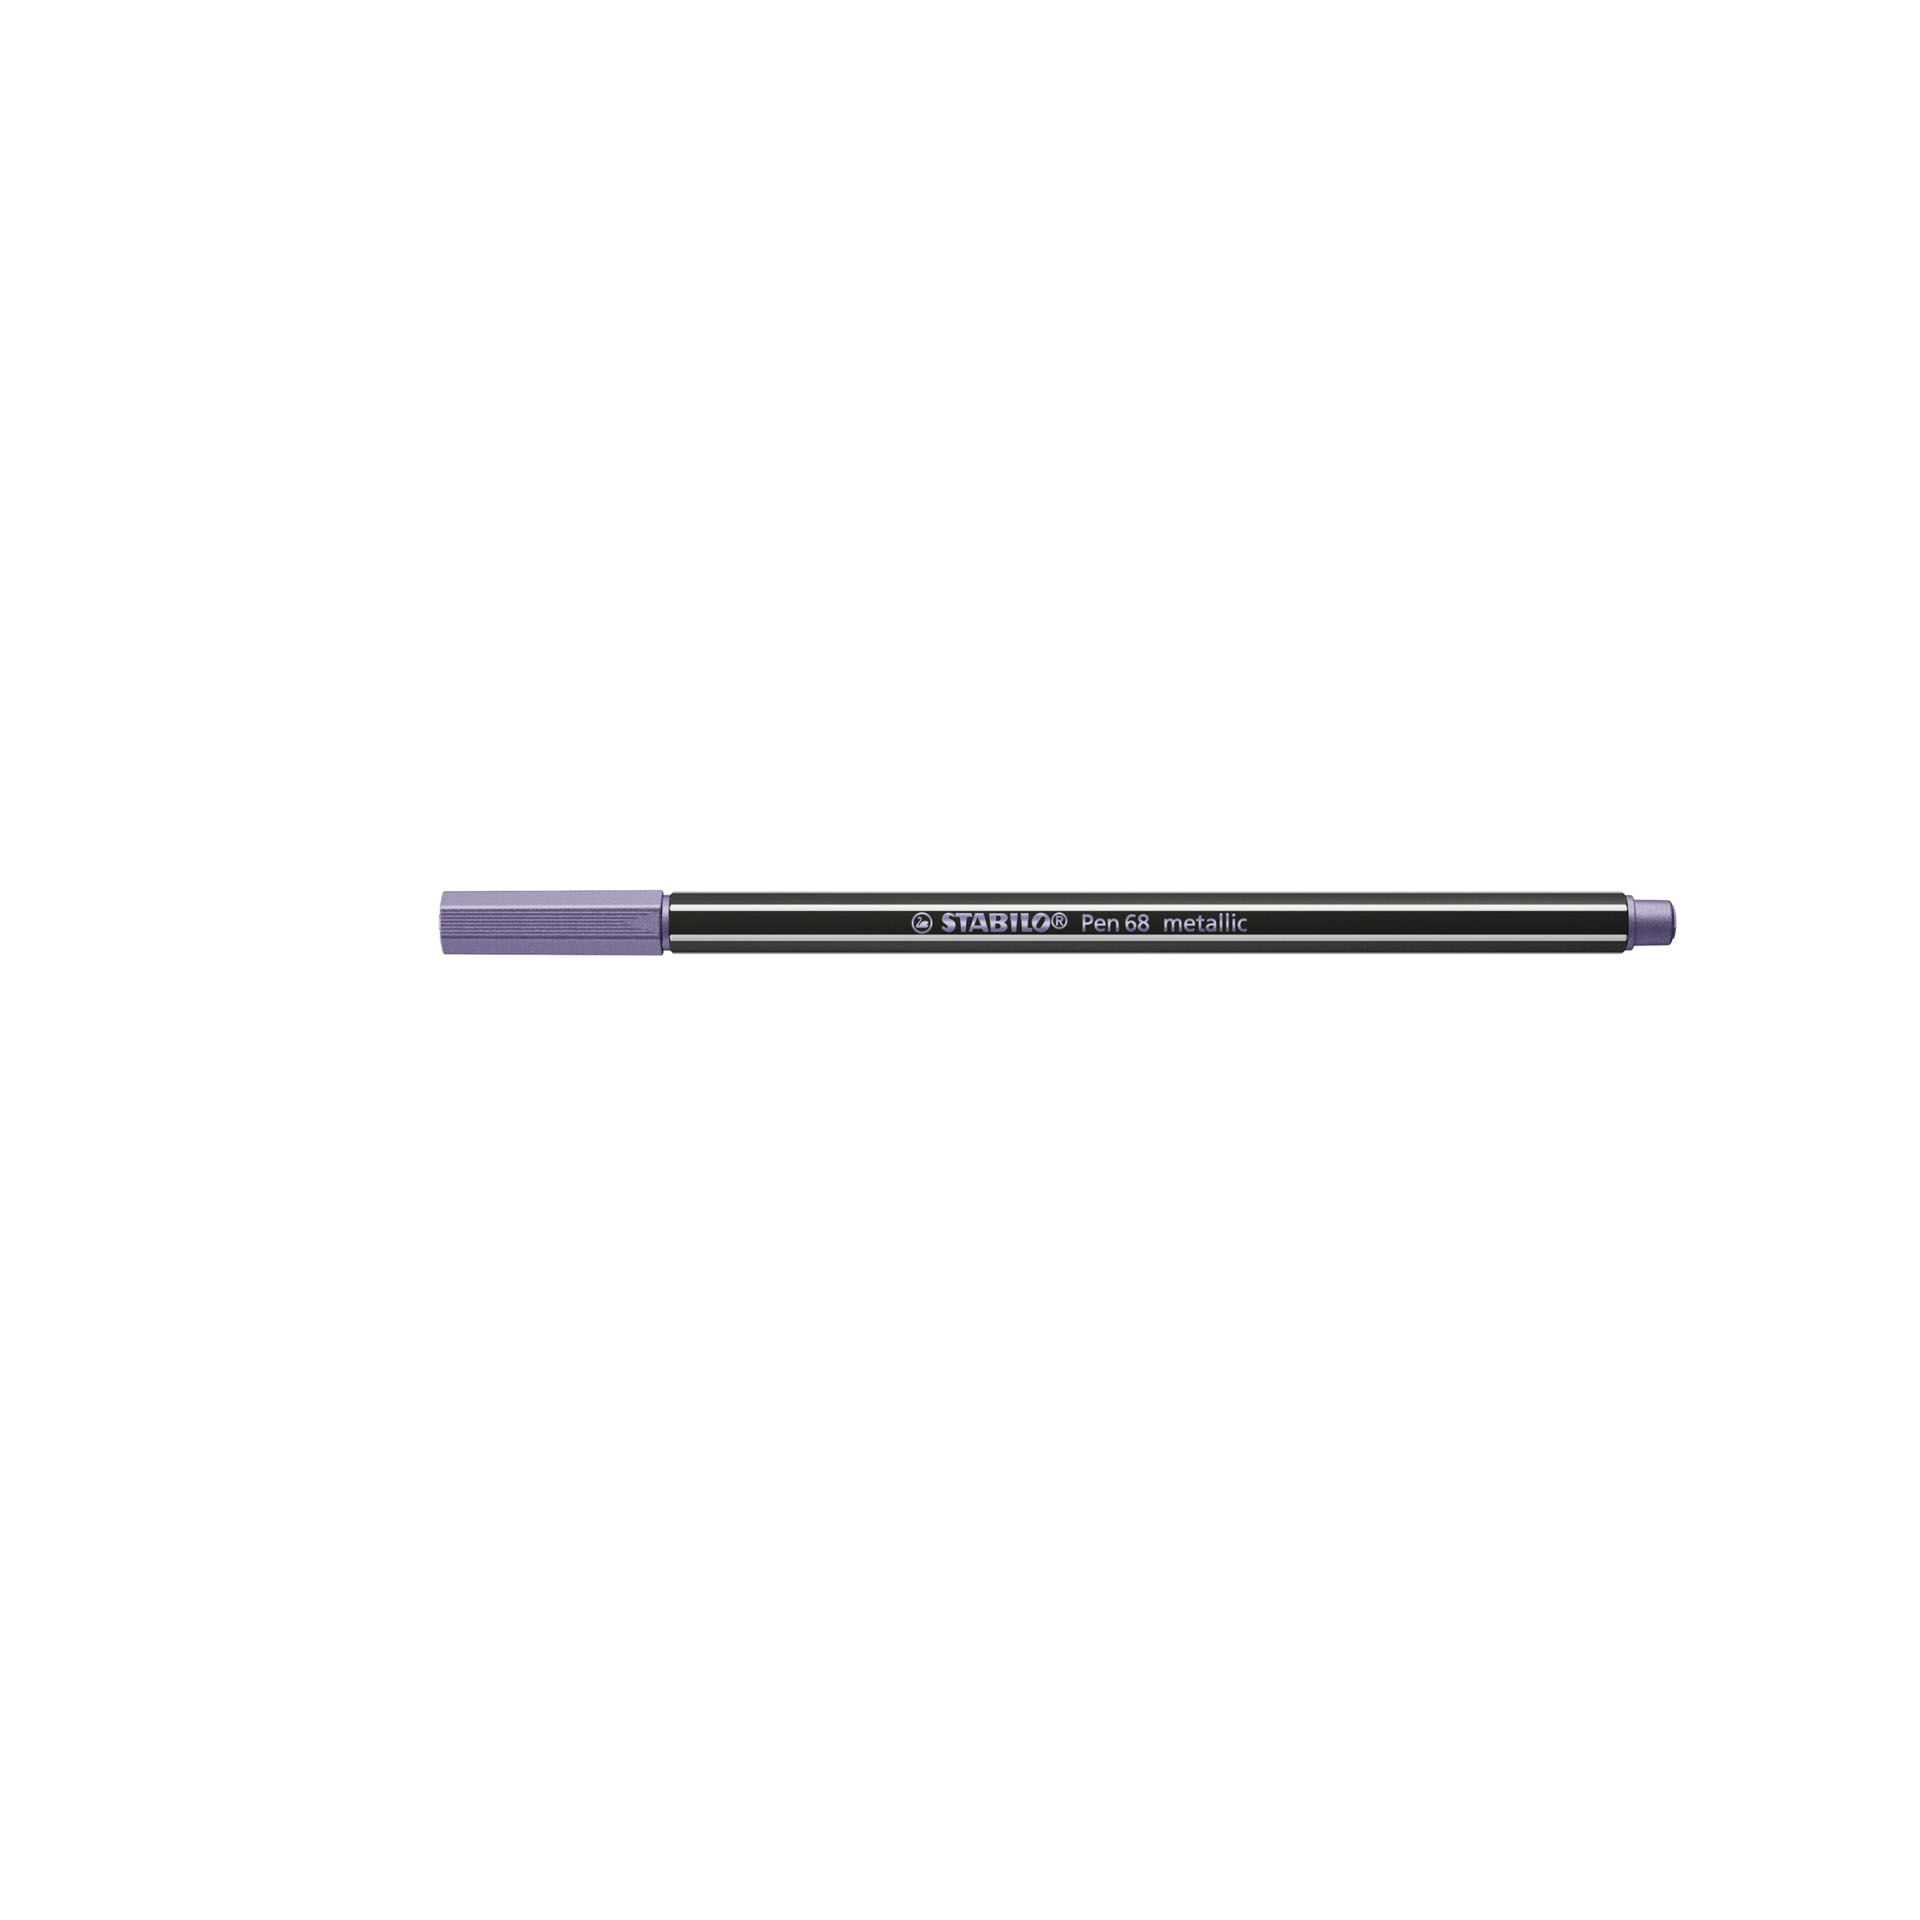 Pennarello Premium Metallizzato - STABILO Pen 68 metallic - Astuccio da 8 colori, , large